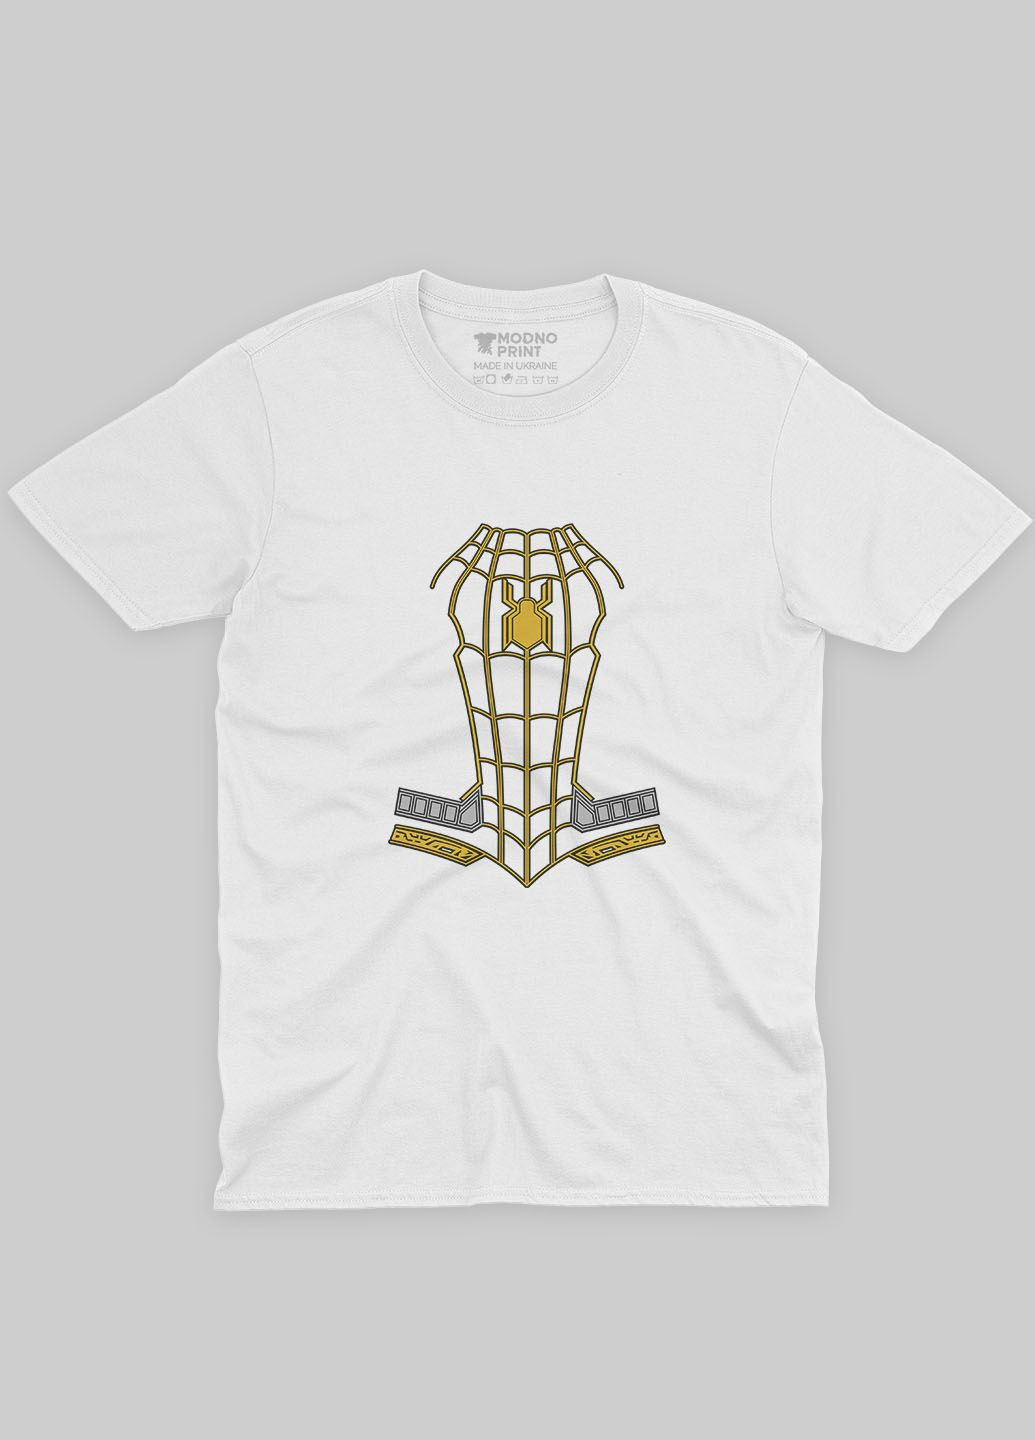 Біла демісезонна футболка для дівчинки з принтом супергероя - людина-павук (ts001-1-whi-006-014-083-g) Modno